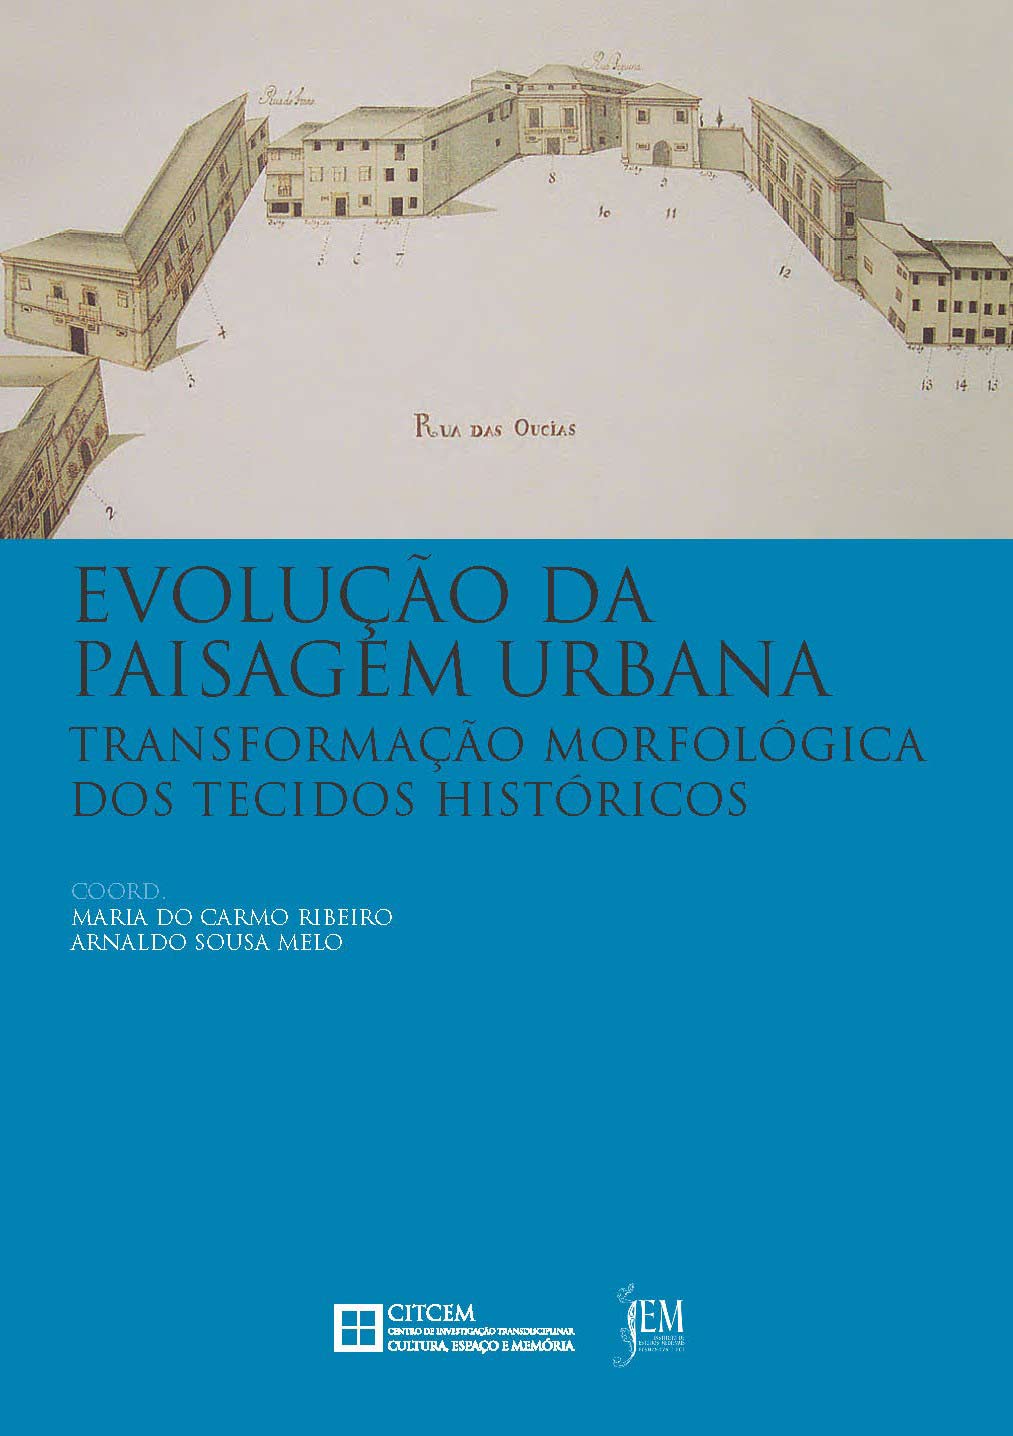 Capa da publicação Evolução da paisagem urbana: transformação morfológica dos tecidos históricos